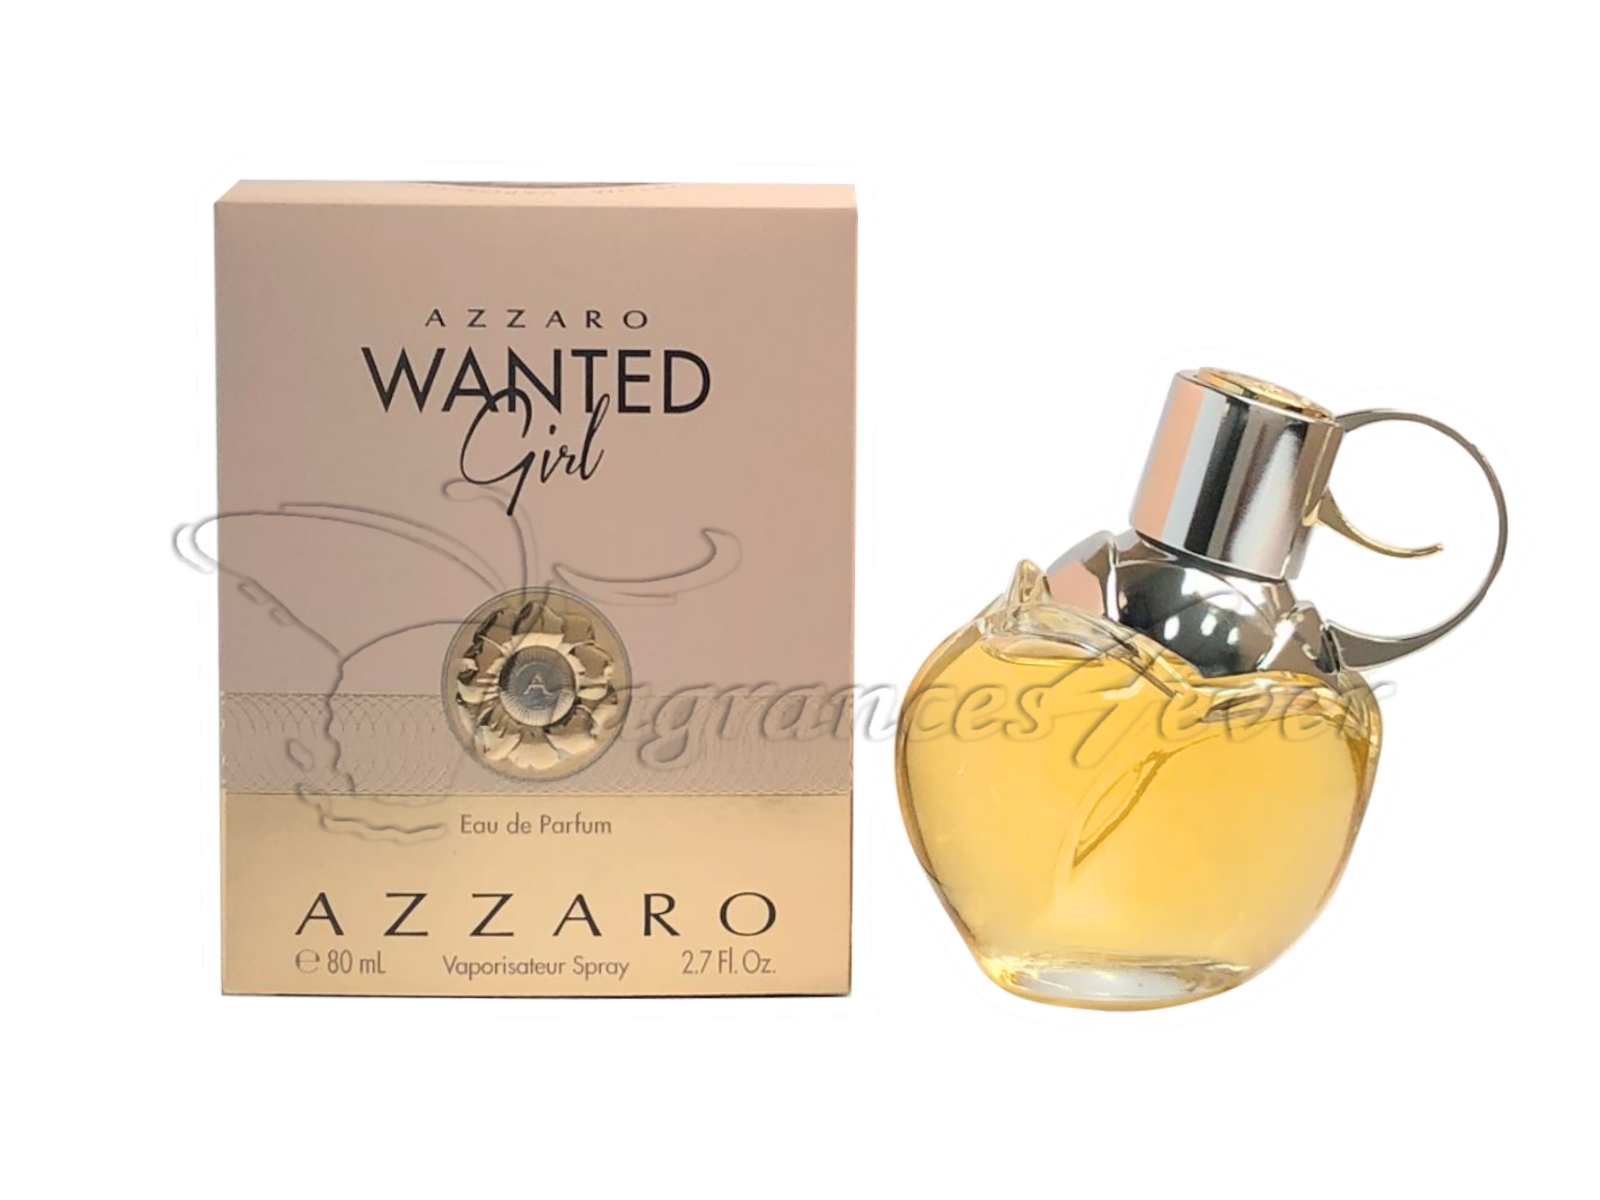 Azzaro Wanted Girl Eau De Parfum, Perfume for Women, 2.7 oz - image 2 of 3